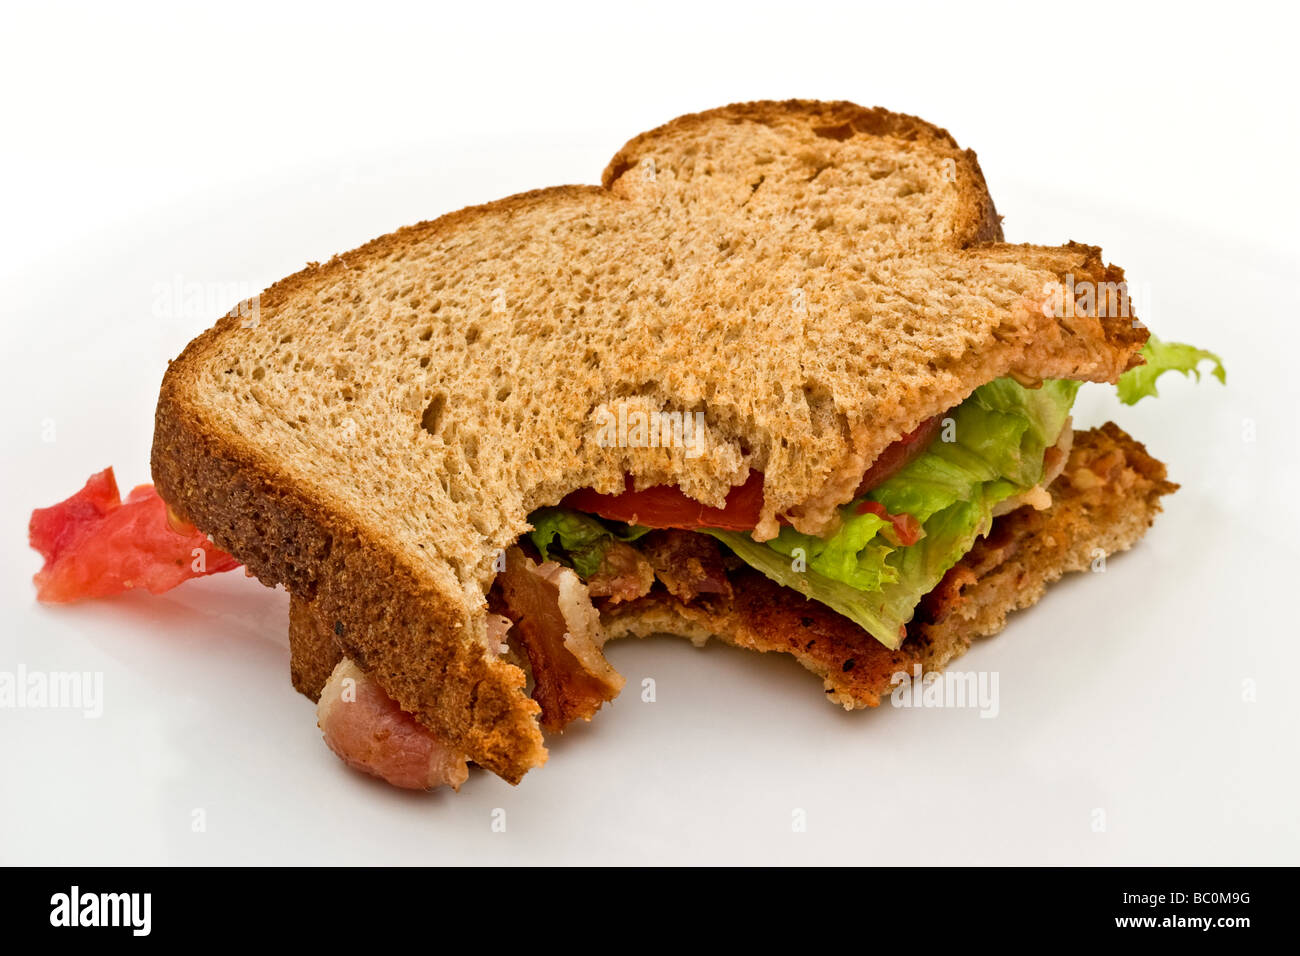 Bacon, laitue et tomate sandwich sur pain brun avec une morsure pris hors de lui Banque D'Images